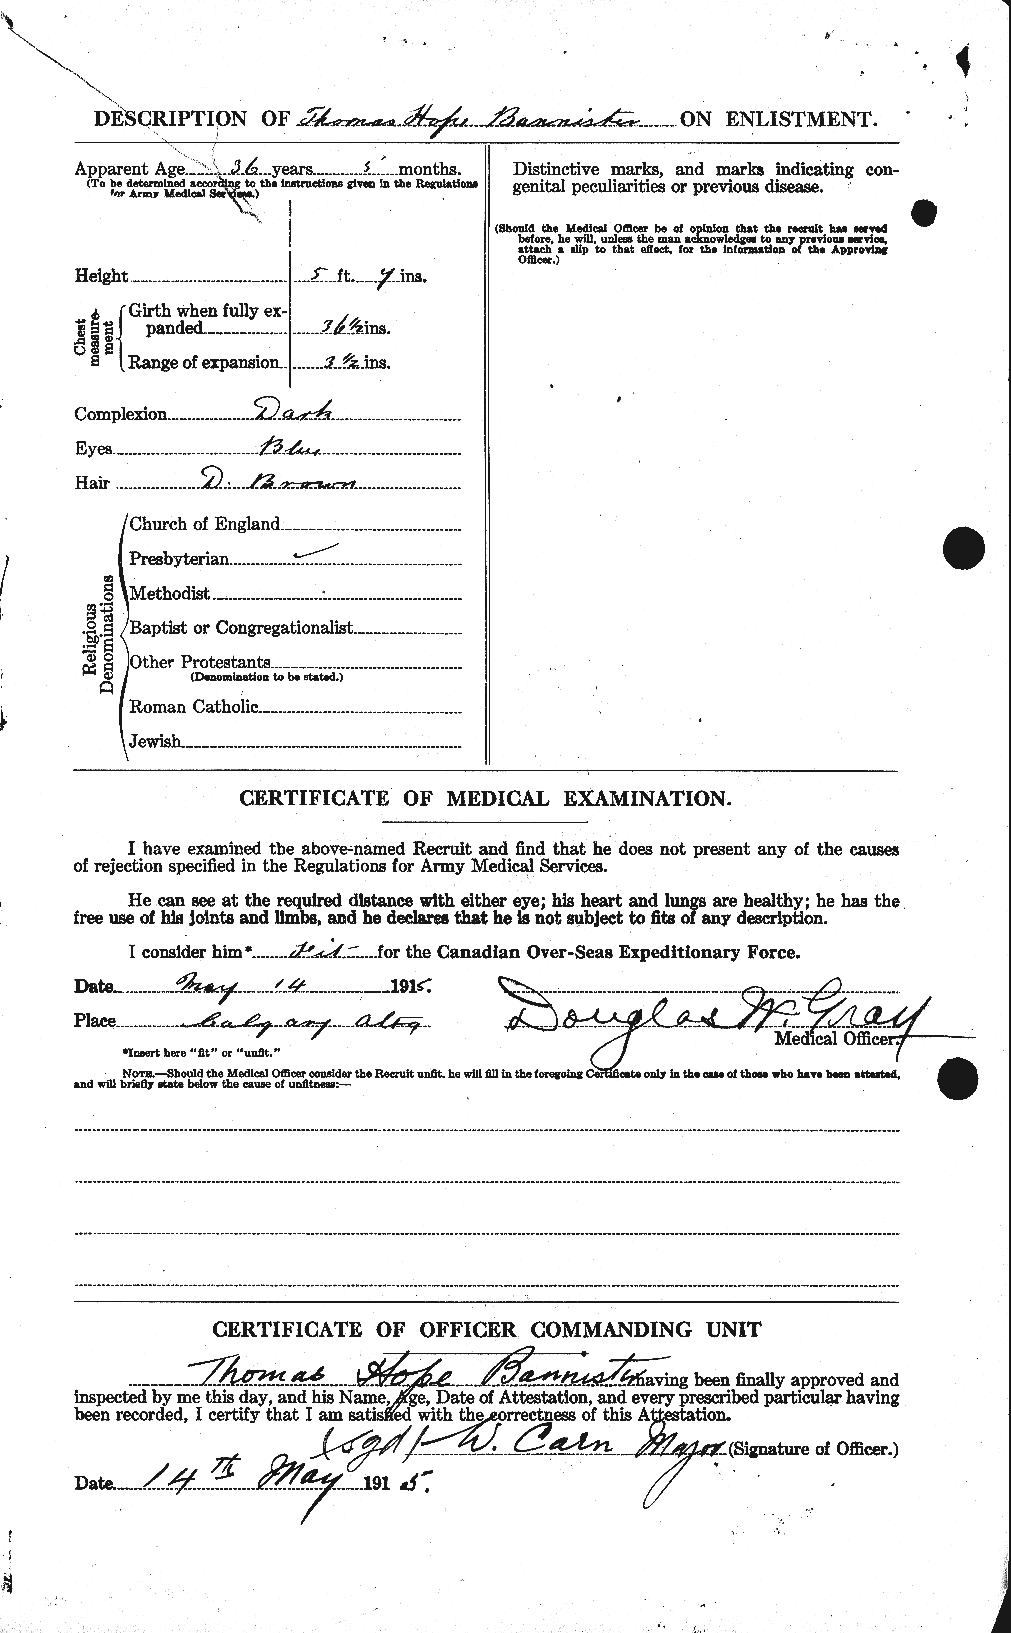 Dossiers du Personnel de la Première Guerre mondiale - CEC 224761b